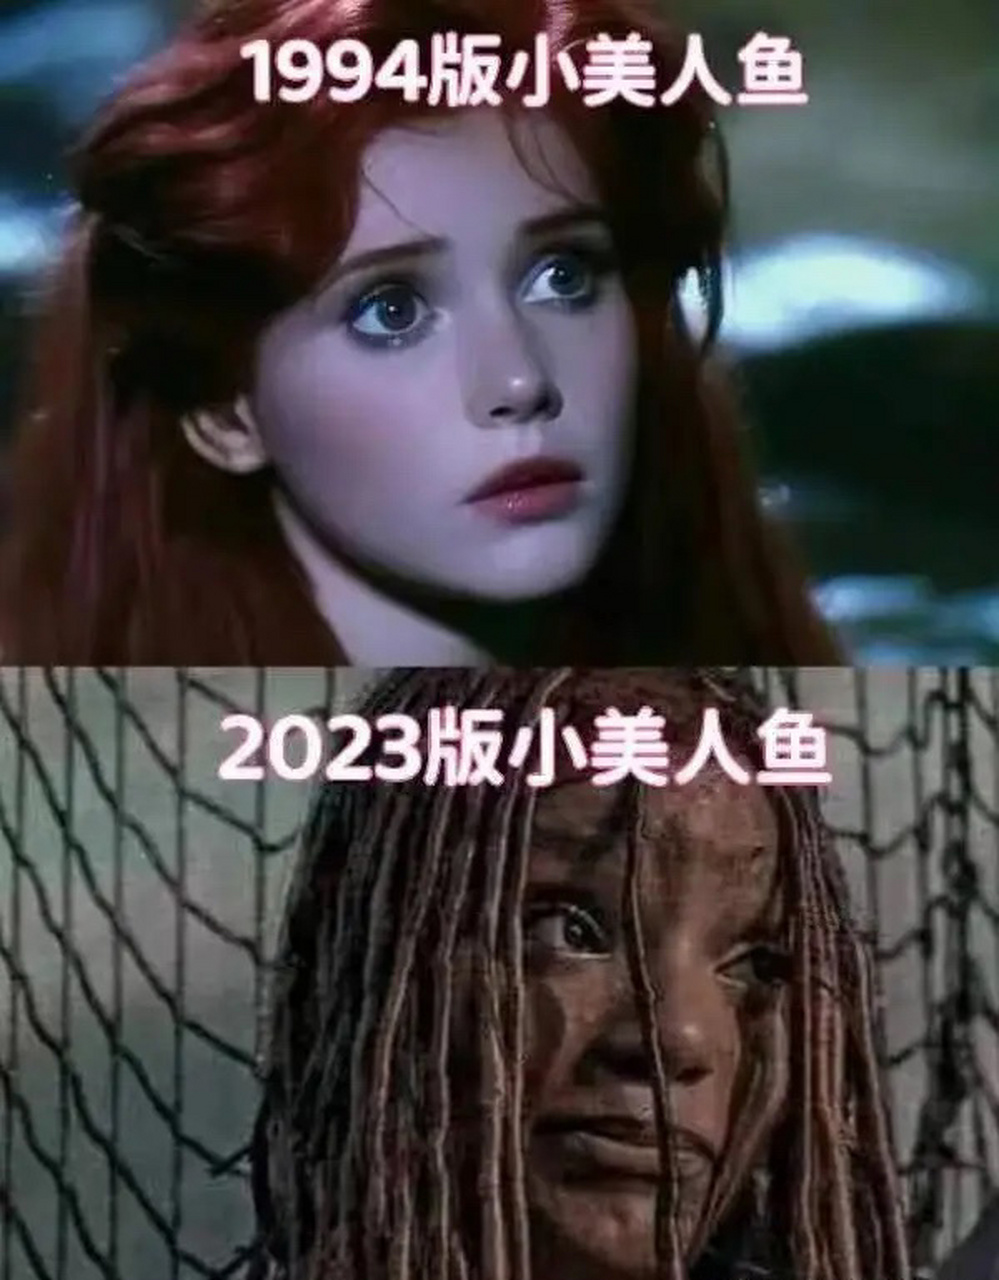 1994版小美人鱼vs2023版小美人鱼,你更喜欢哪个版本?